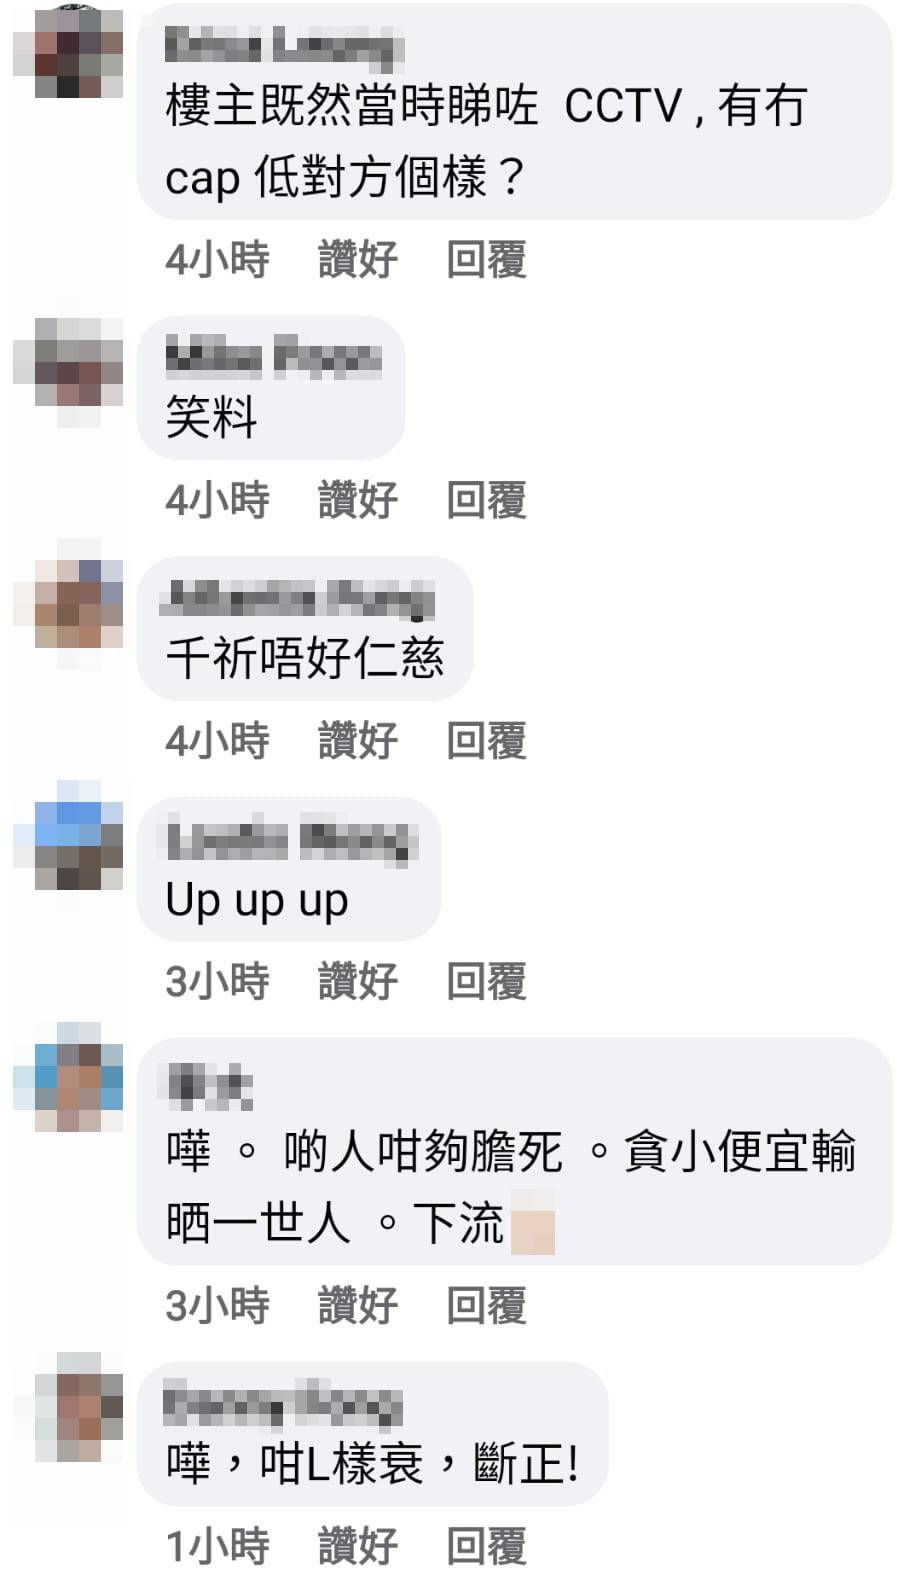 網民提議事主在香港也要報警，「千祈唔好仁慈」，這種人要受懲罰。